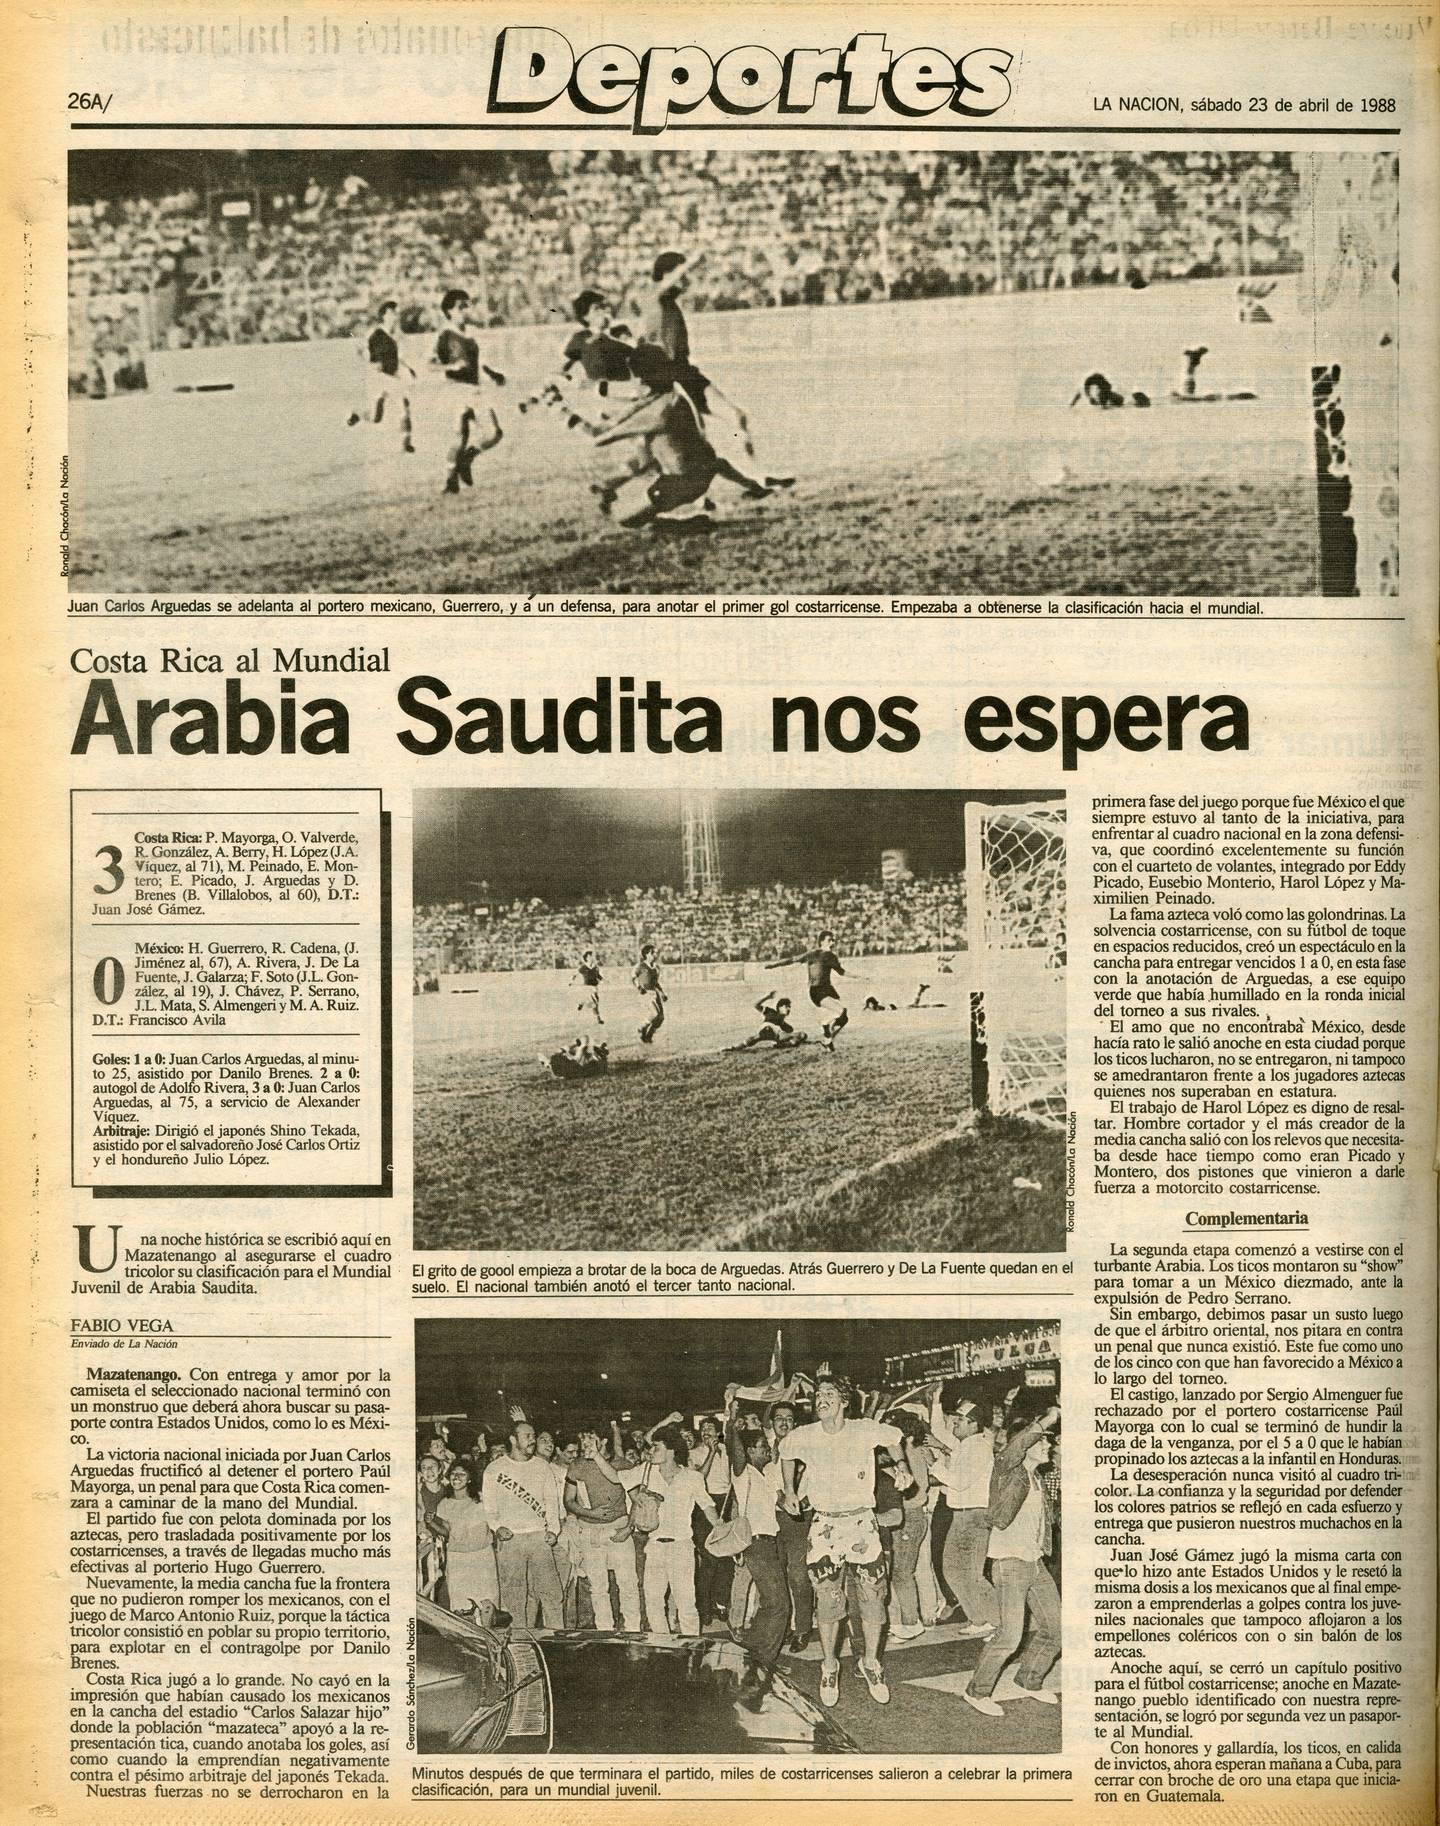 Así reseñó 'La Nación' la clasificación de la Selección de Costa Rica al Mundial Sub-20 de Arabia Saudita 1989.